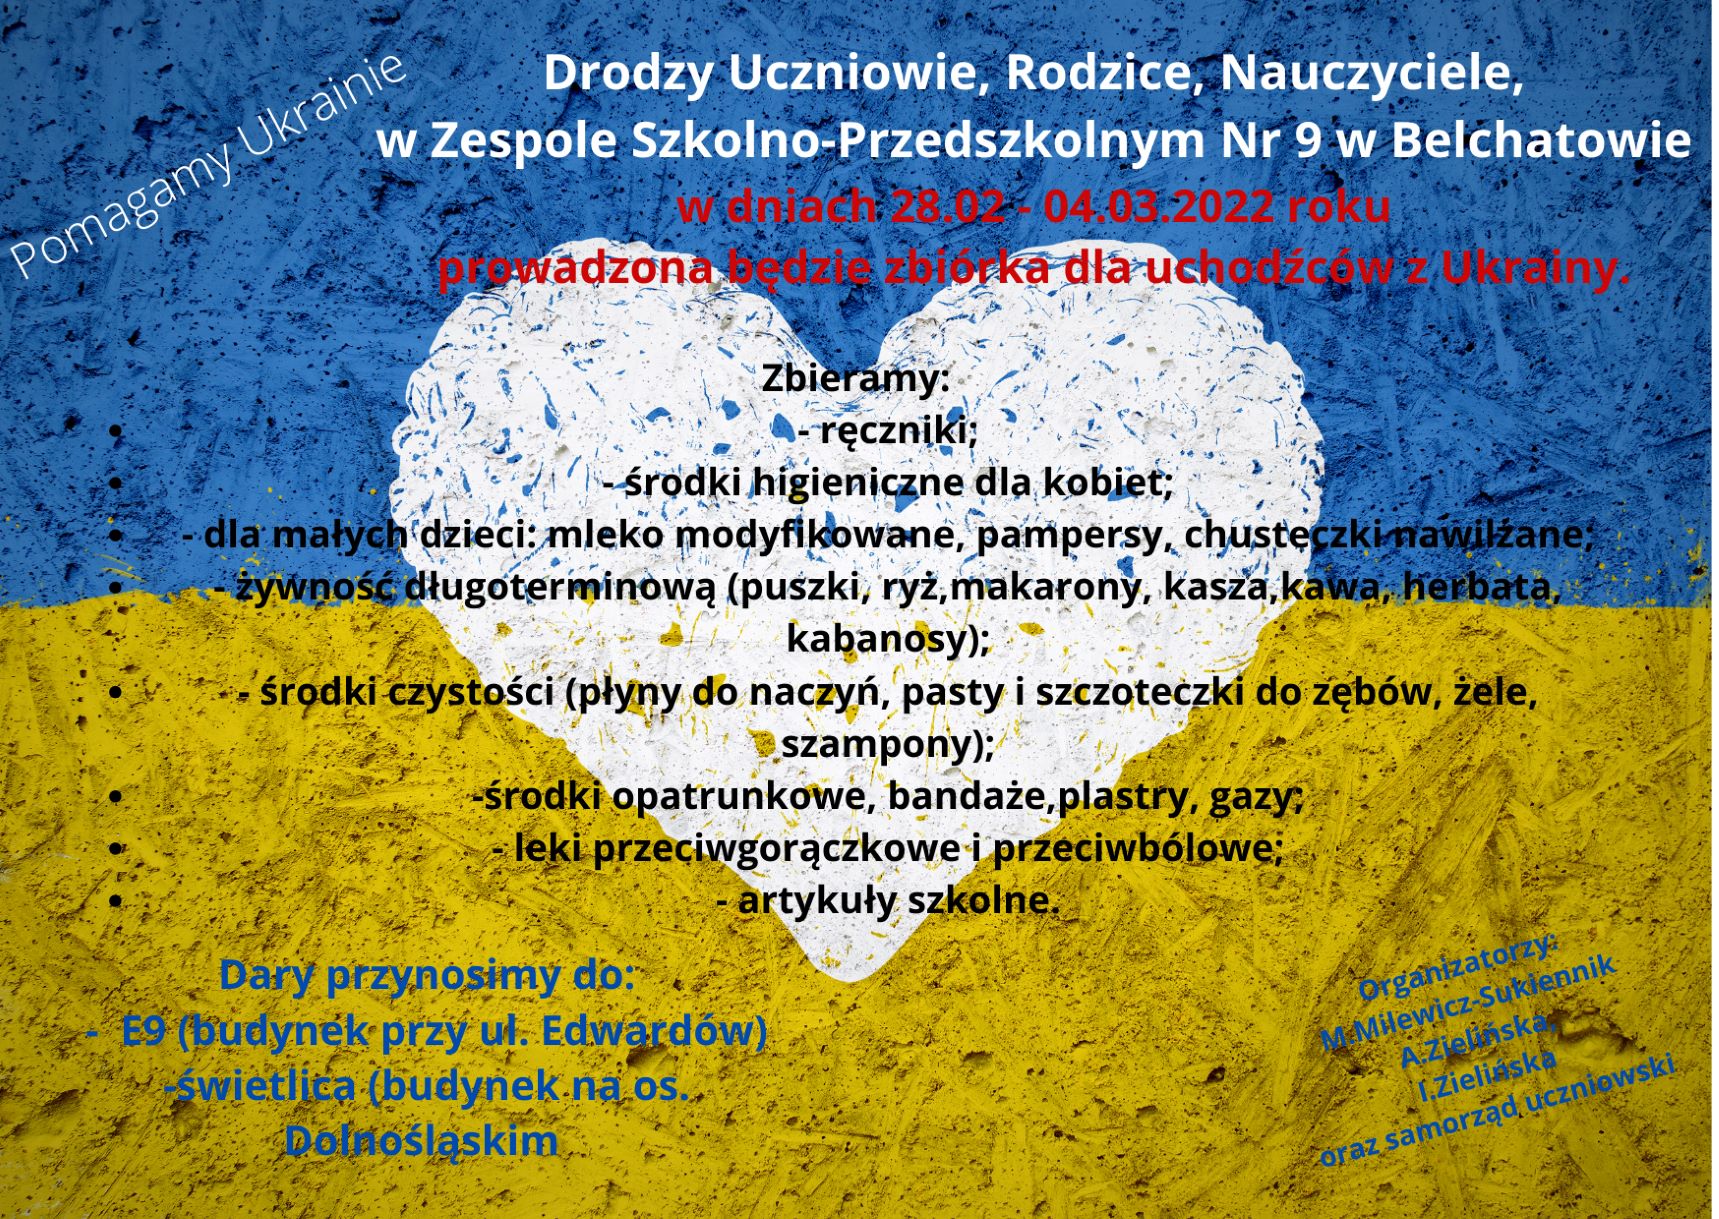 Plakat z informacjami na temat zbiórki produktów dla uchodźców z Ukrainy, potrzebne rzeczy produkty długoterminowe spożywcze, środki higieniczne, produkty dla małych dzieci